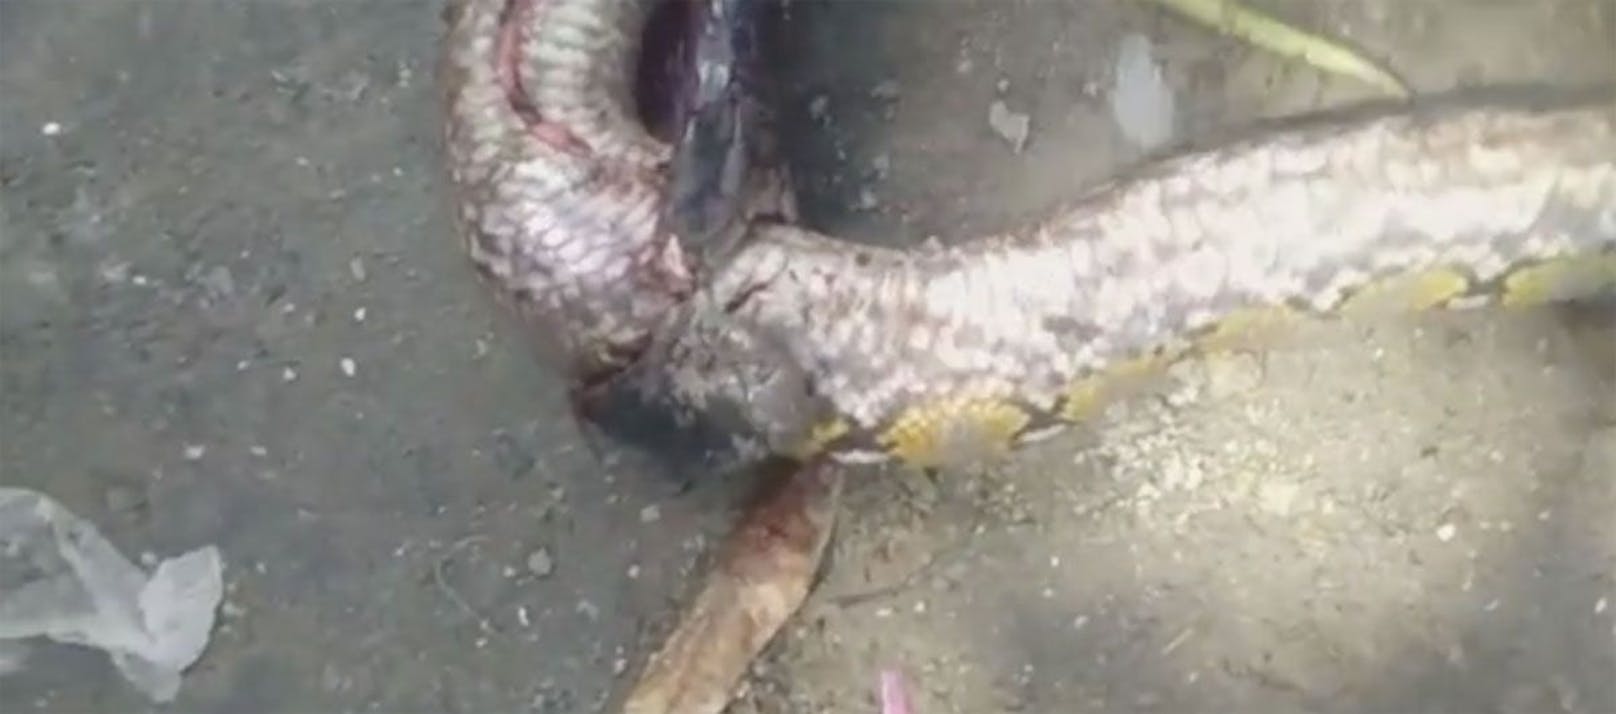 "Es sind schon vorher Menschen an Kobrabissen gestorben, deswegen hat mein Nachbar die Schlange sofort getötet", erklärte einer der Finder.